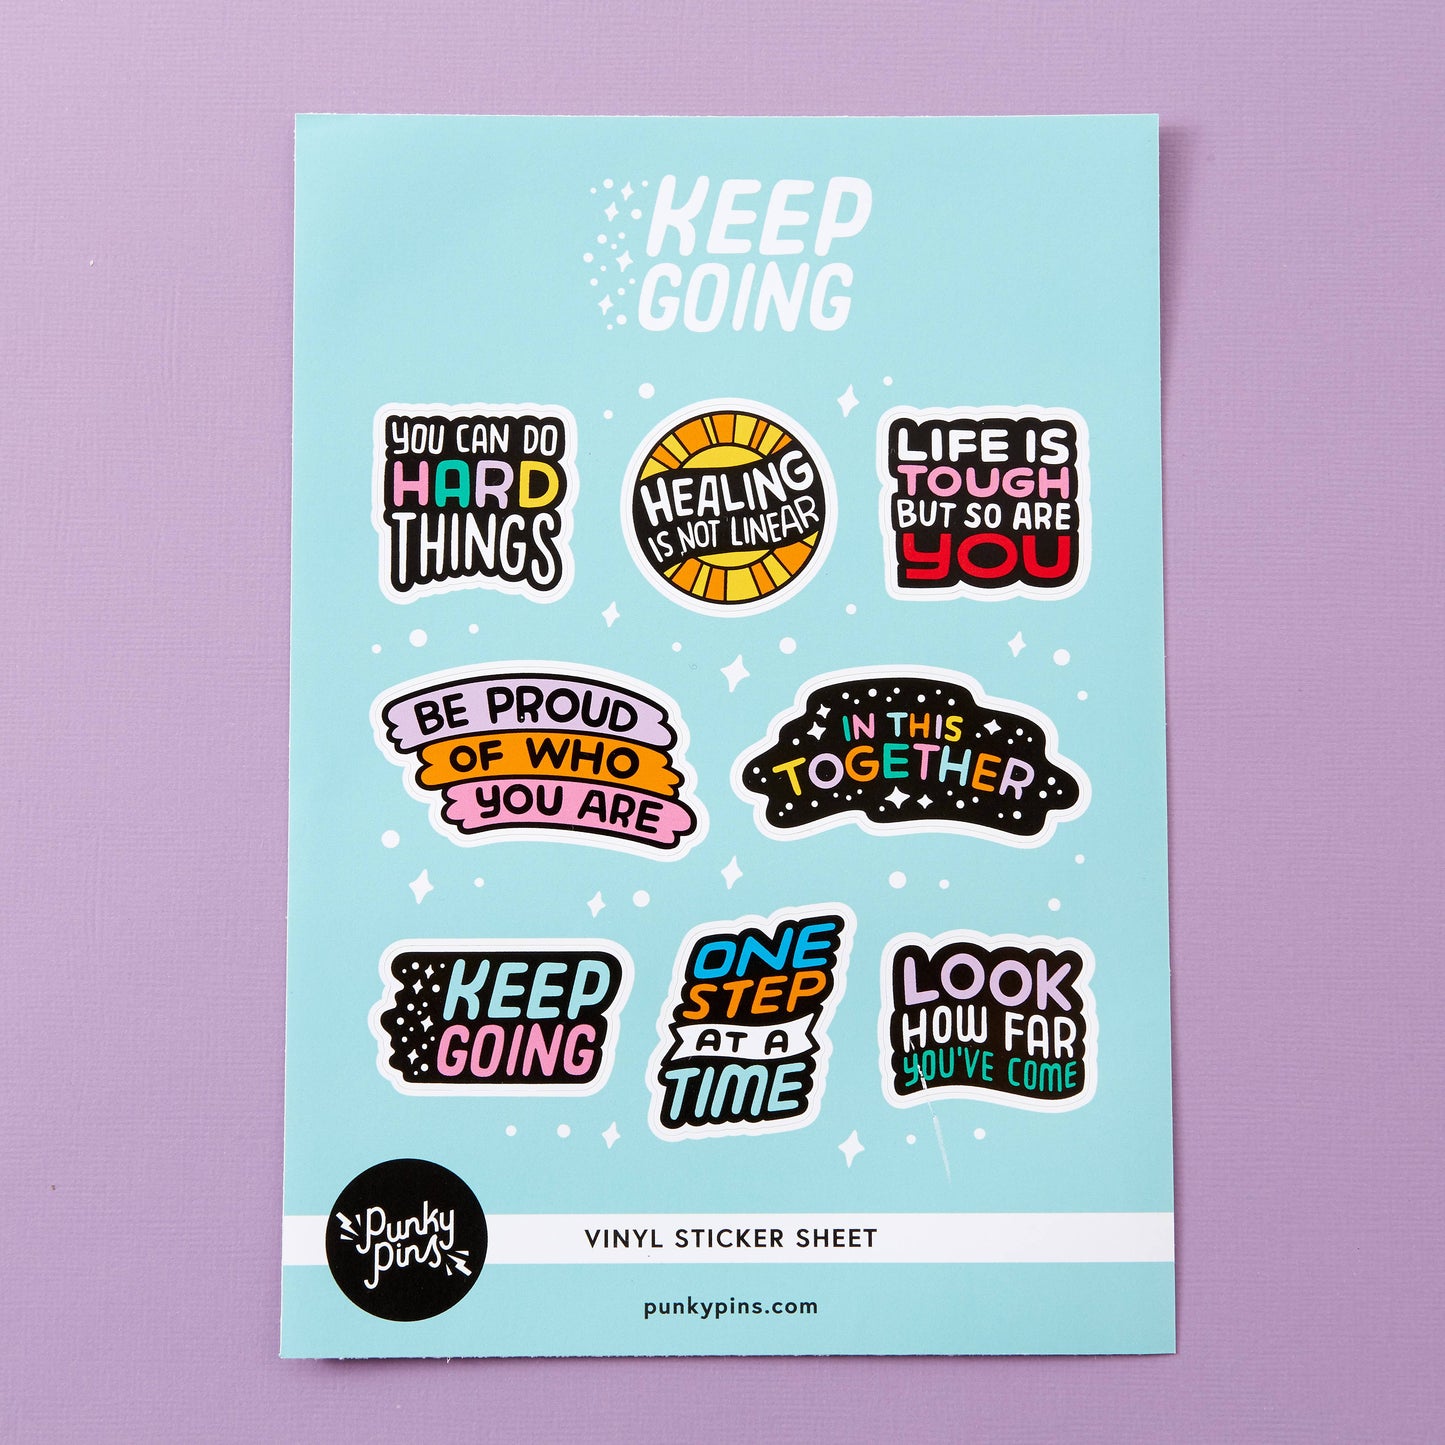 Keep Going Vinyl Sticker Sheet